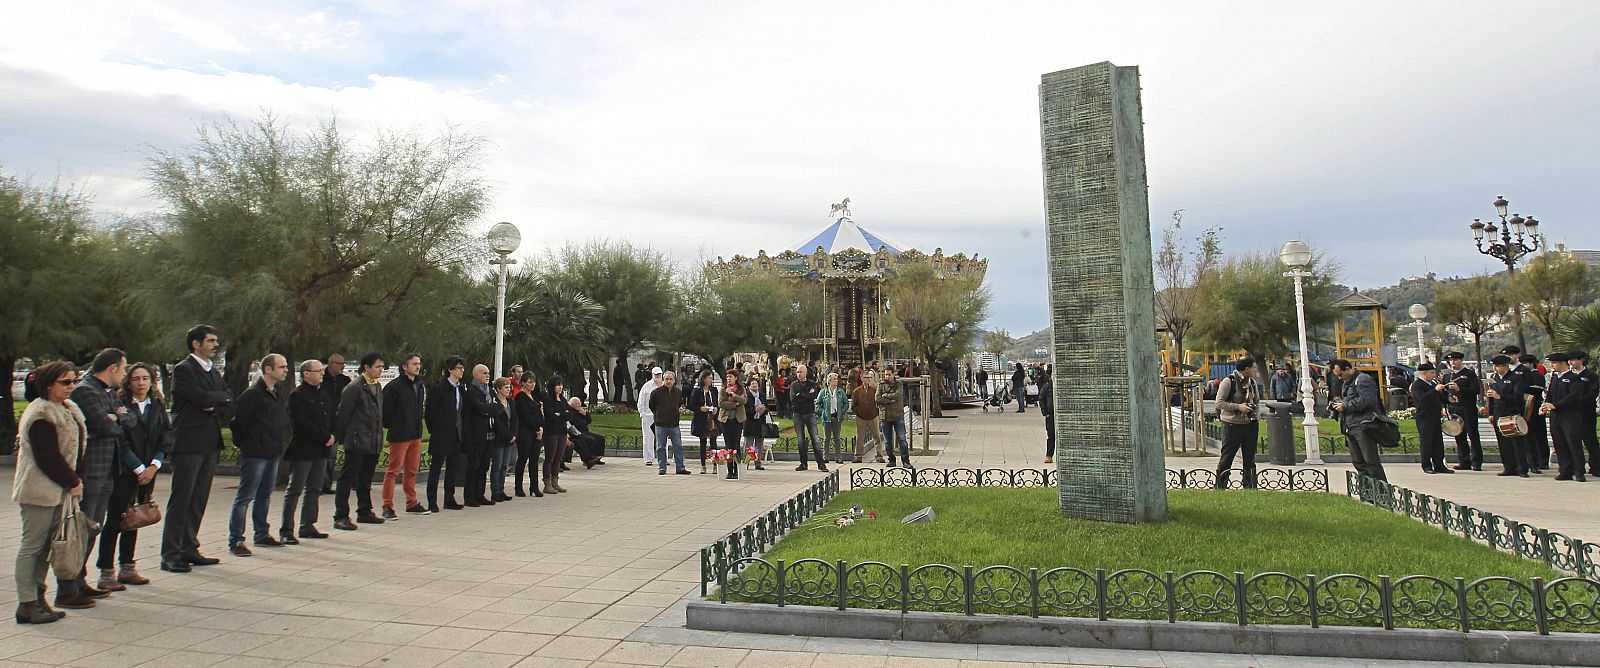 La escultura en memoria de las víctimas del terrorismo, situado en los jardines de Alderdi Eder de la capital donostiarra.